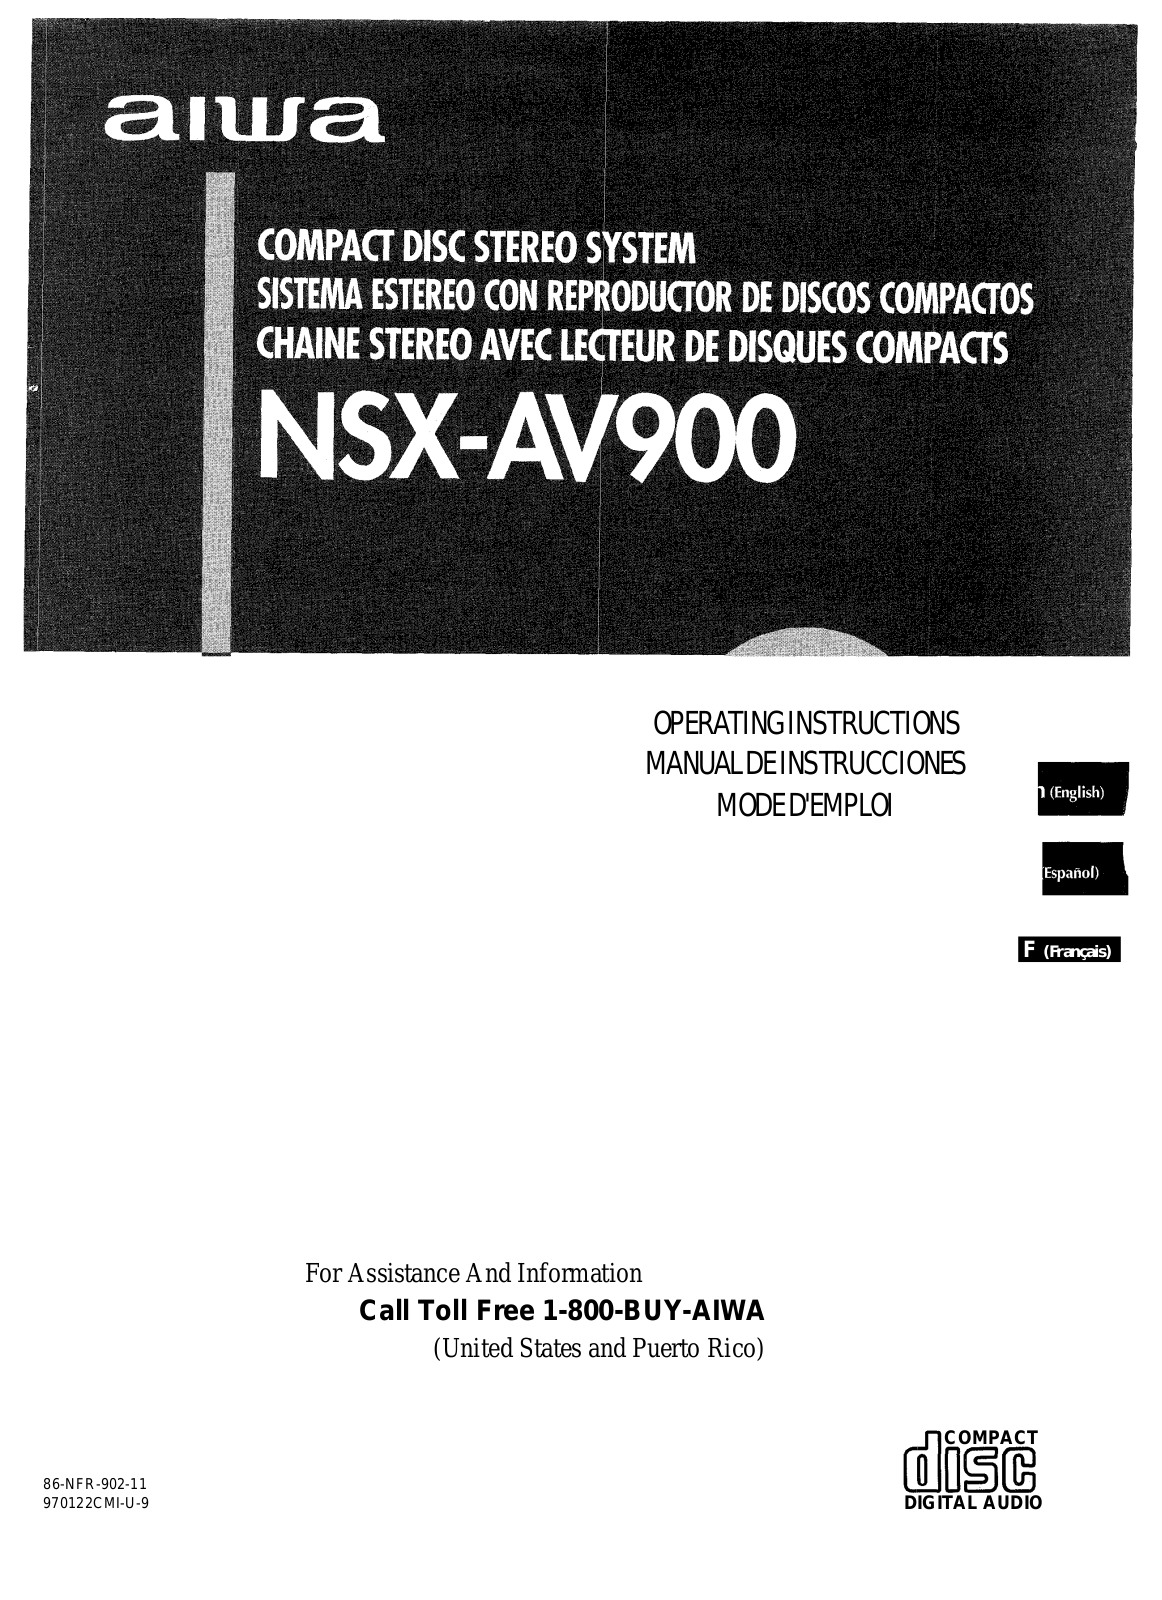 Aiwa NSX-AV900 User Manual